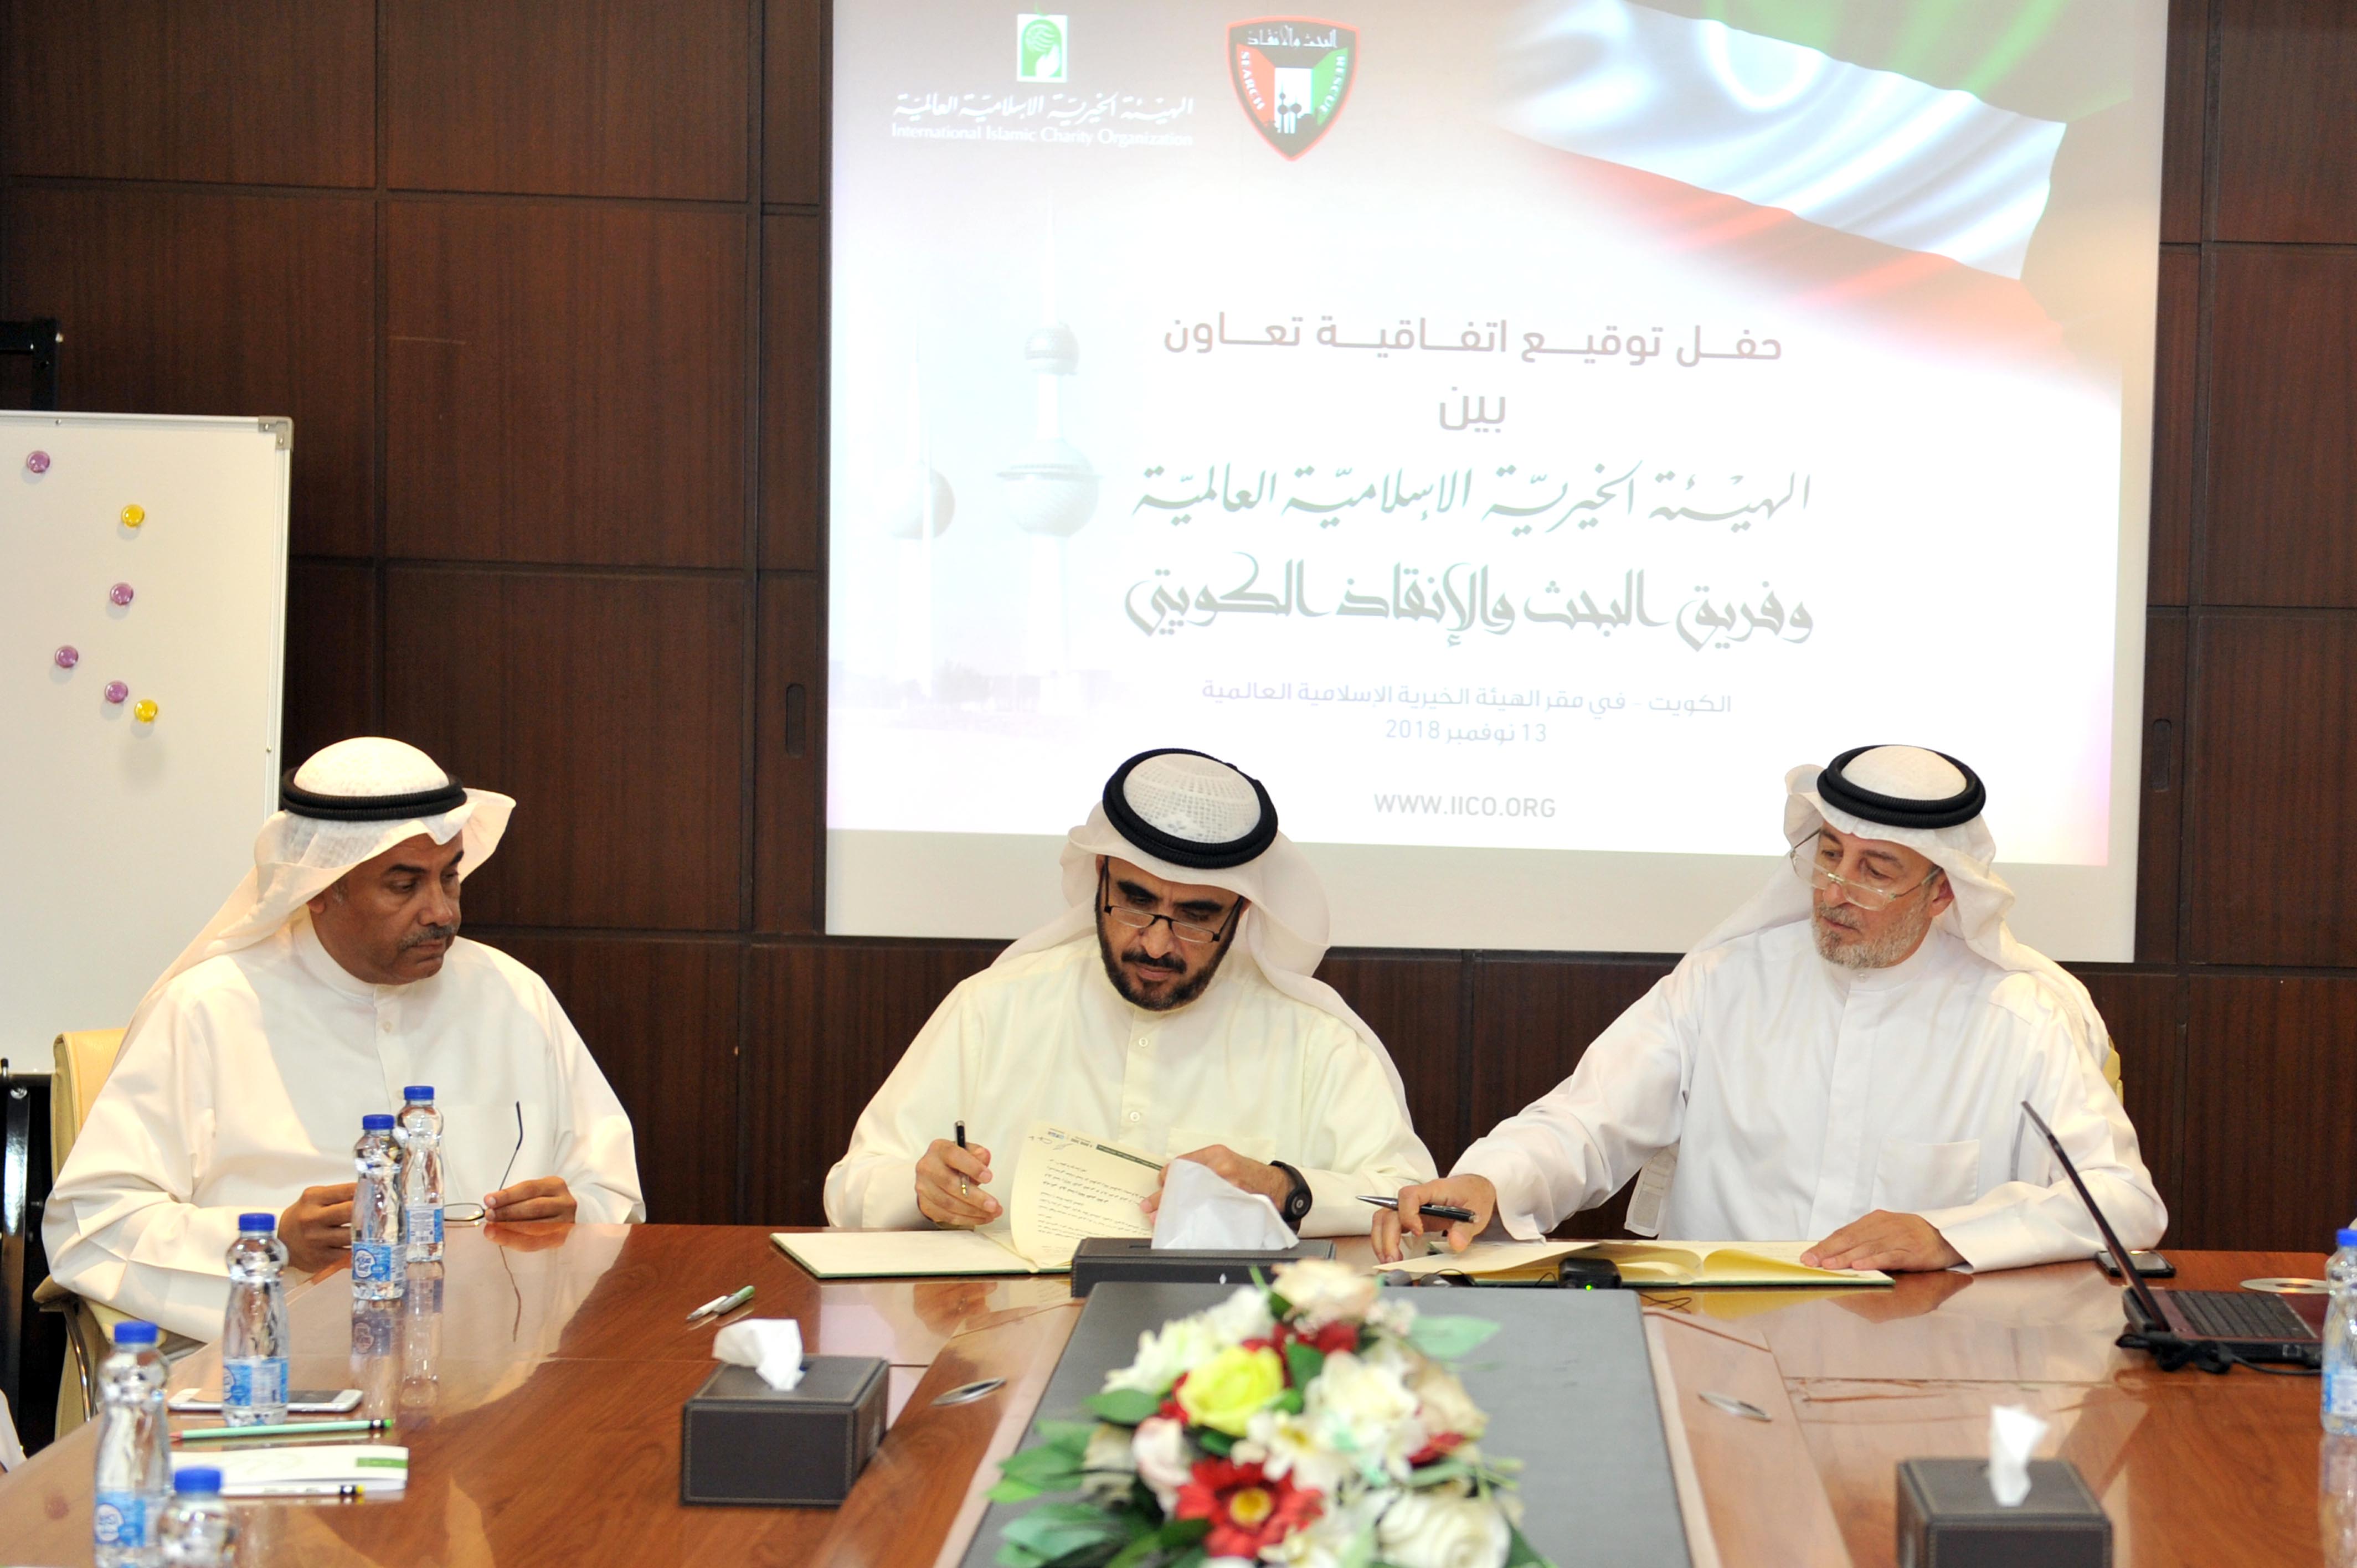 الهيئة الخيرية الإسلامية العالمية توقع اتفاقية تعاون مع فريق البحث والانقاذ الكويتي التطوعي